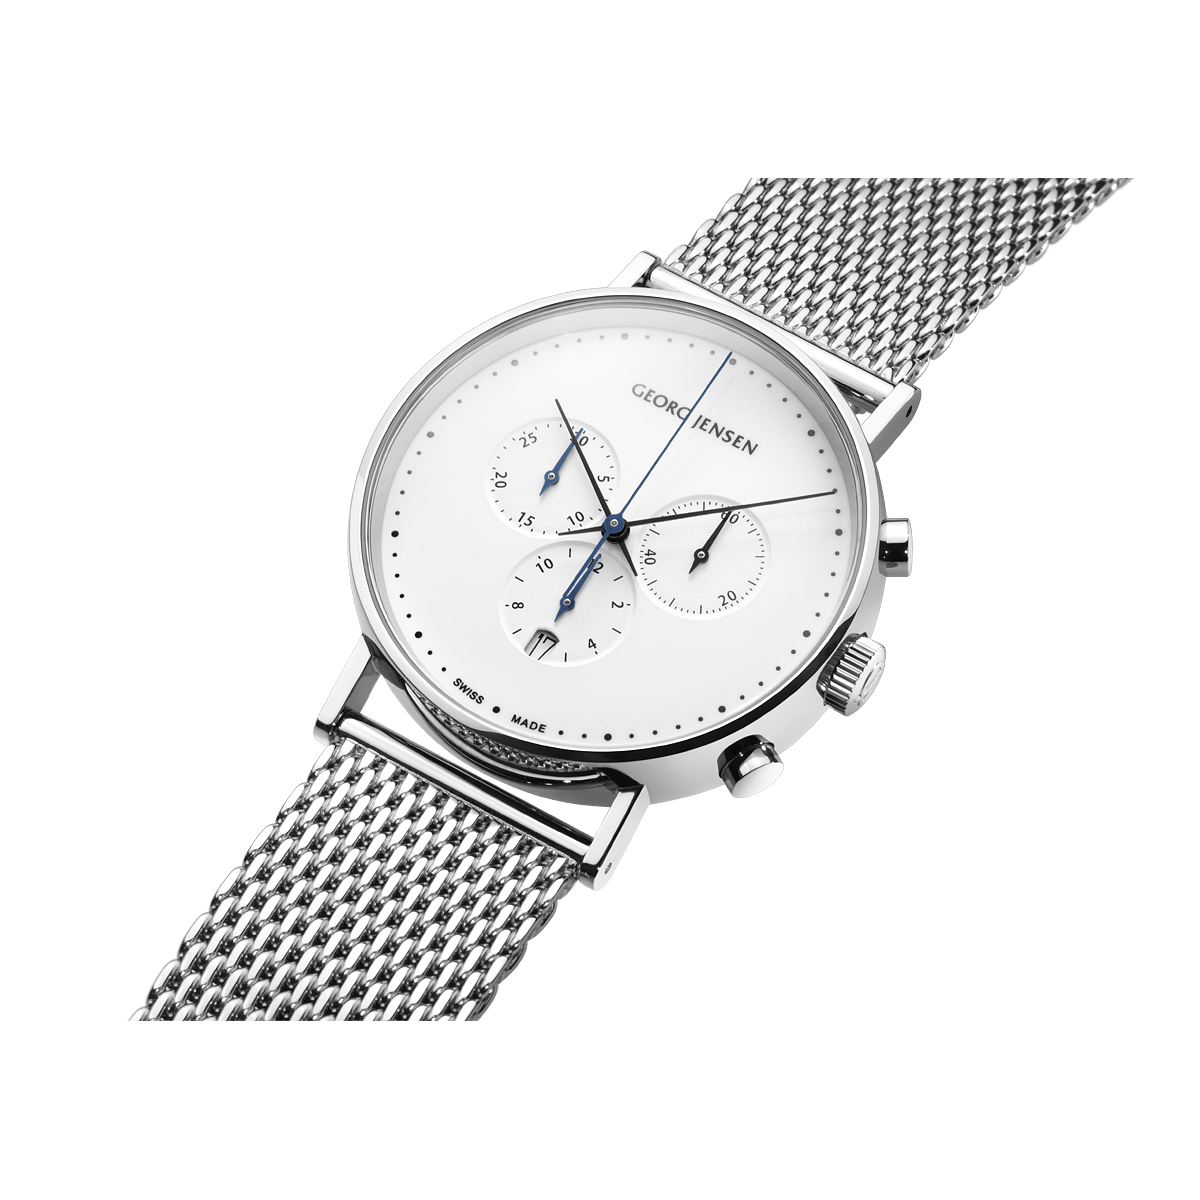 アクセサリー[George jensen] 歴史的価値 ジョージ・ジェンセン 腕時計